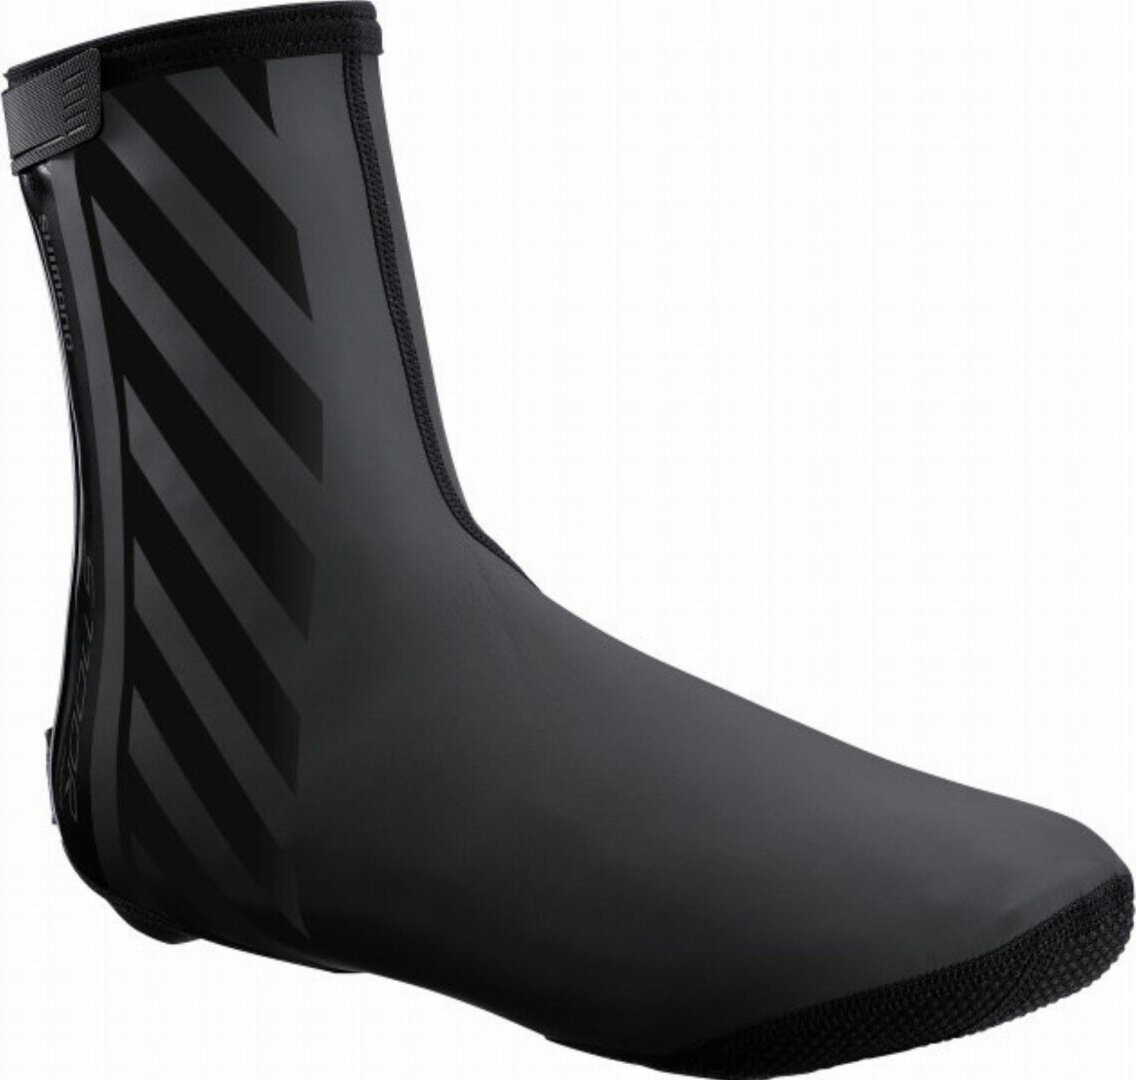 Бахилы Shimano S1100X H2O MTB Shoe Covers (Black) ECWFABWQS42UL4, ECWFABWQS42UL5, ECWFABWQS42UL3